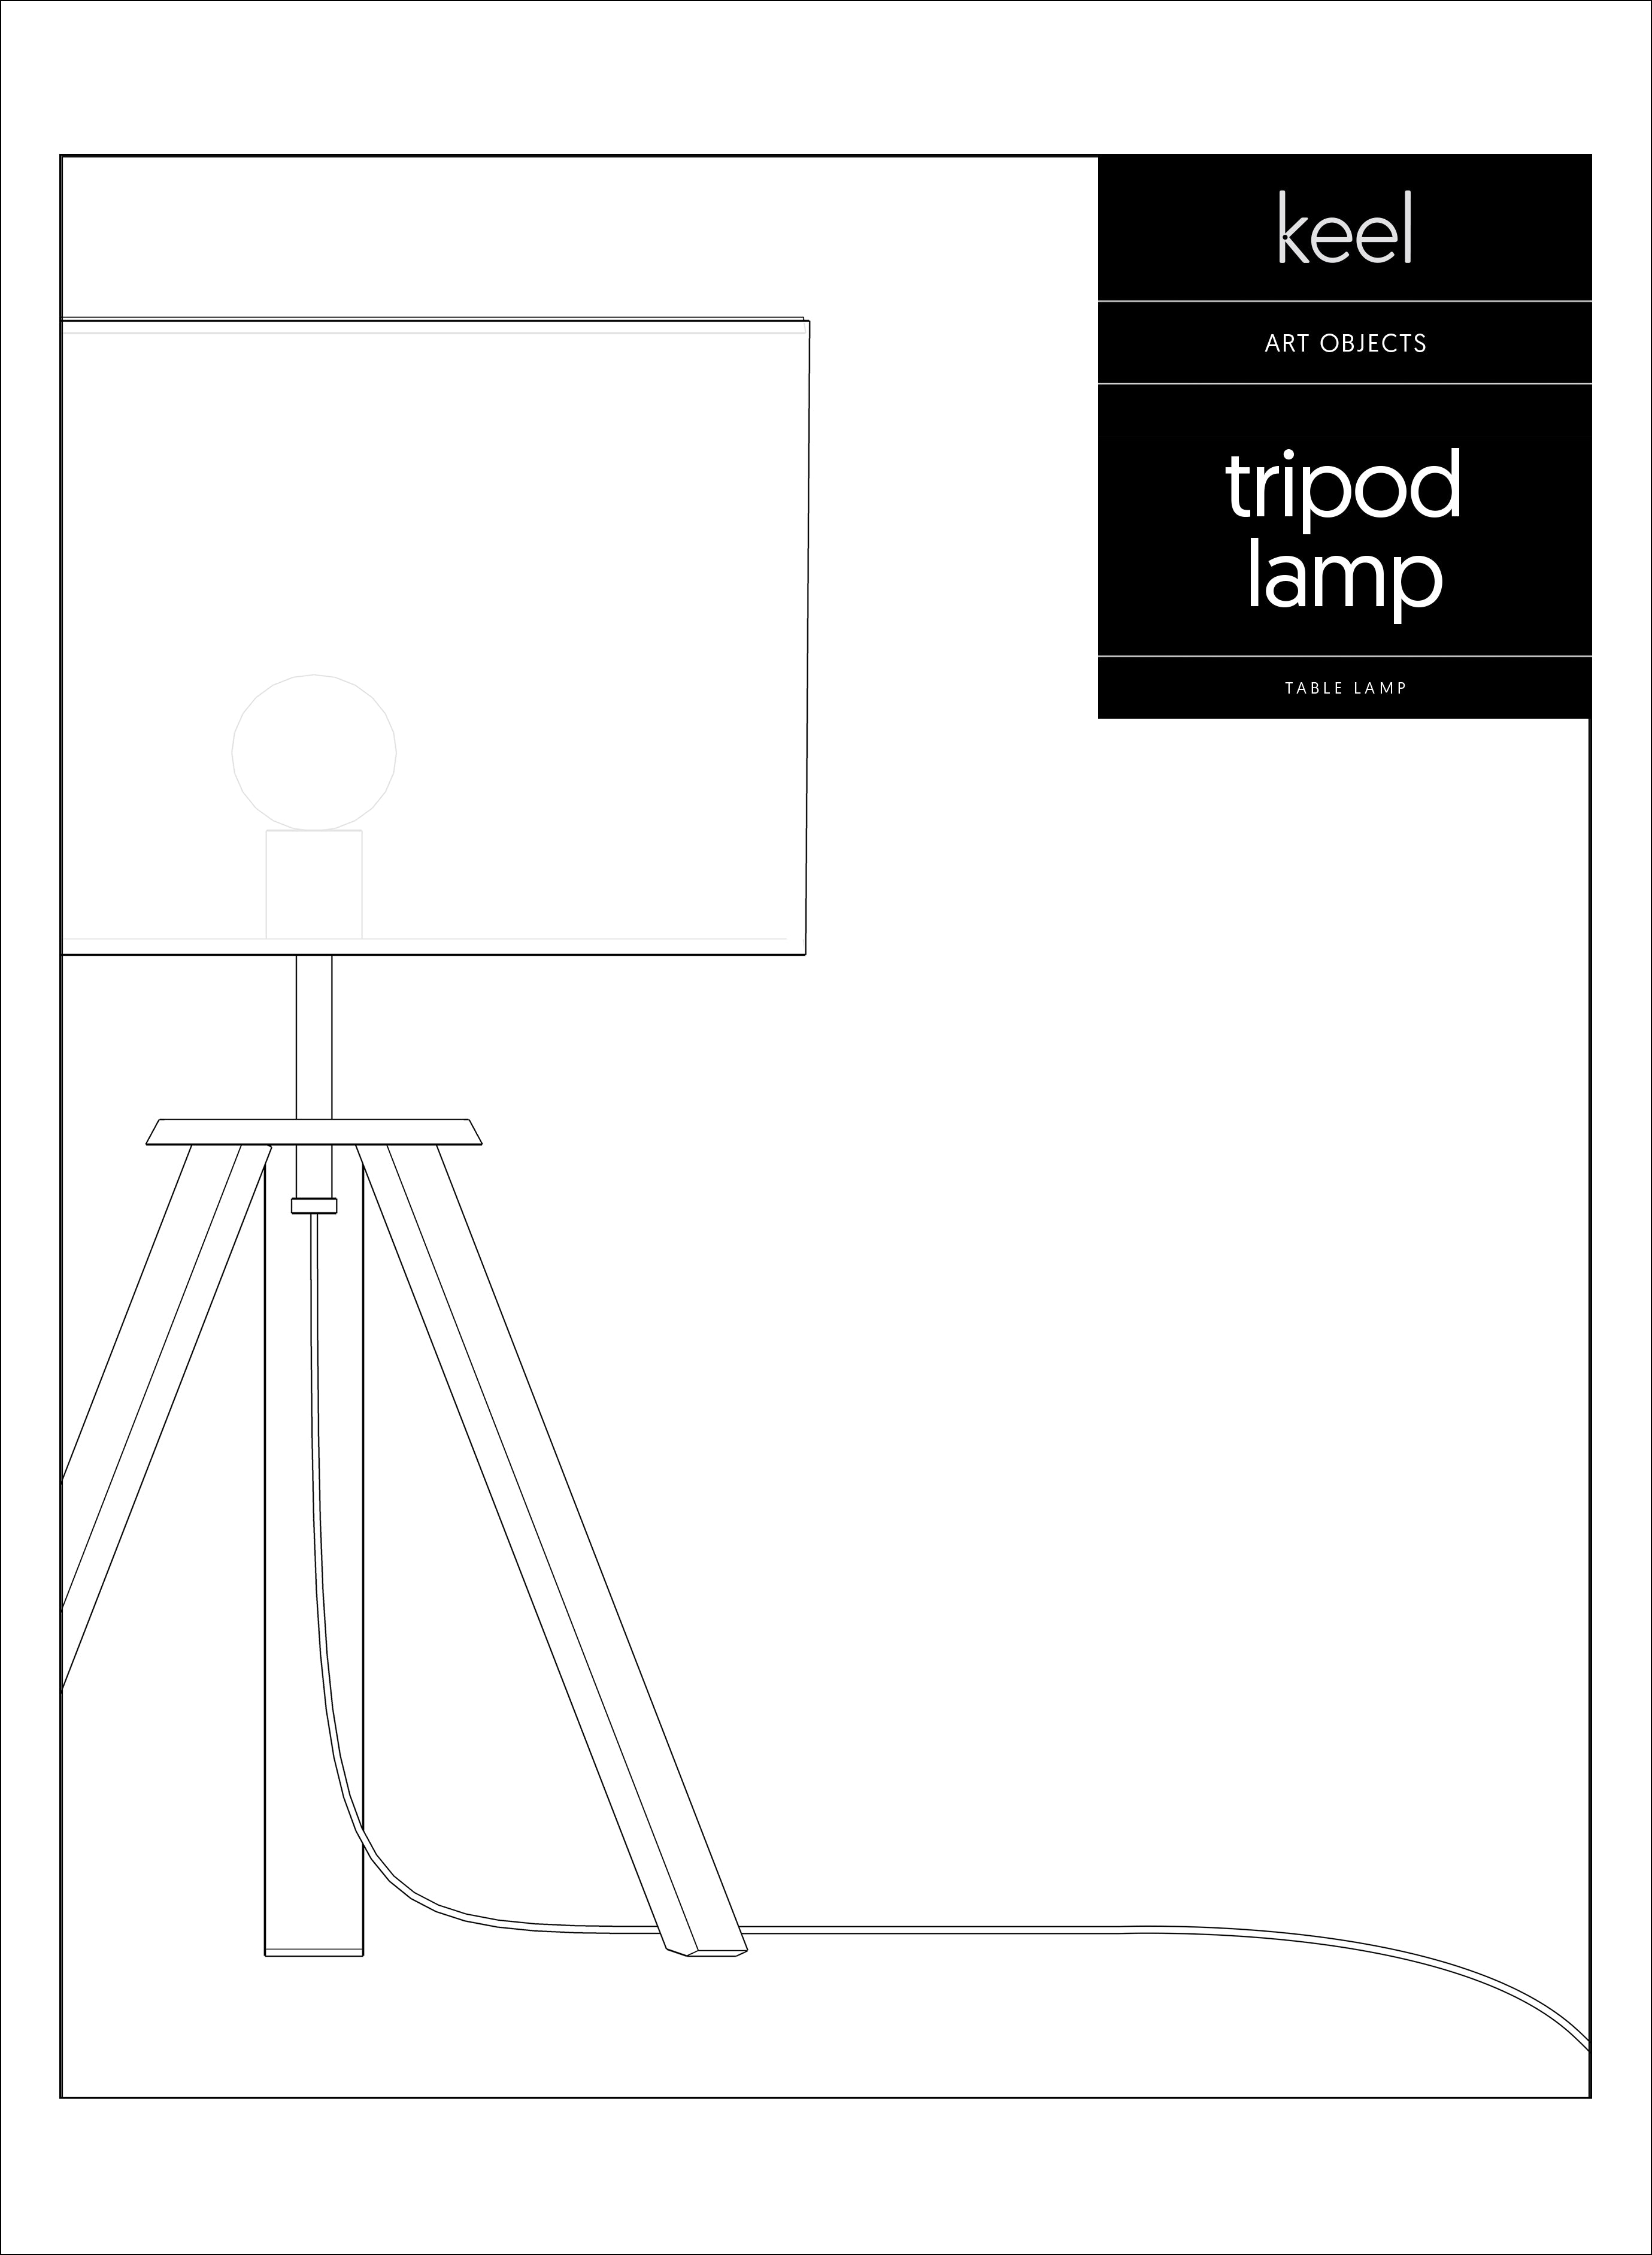 TRIPOD DESK LAMP - Keel